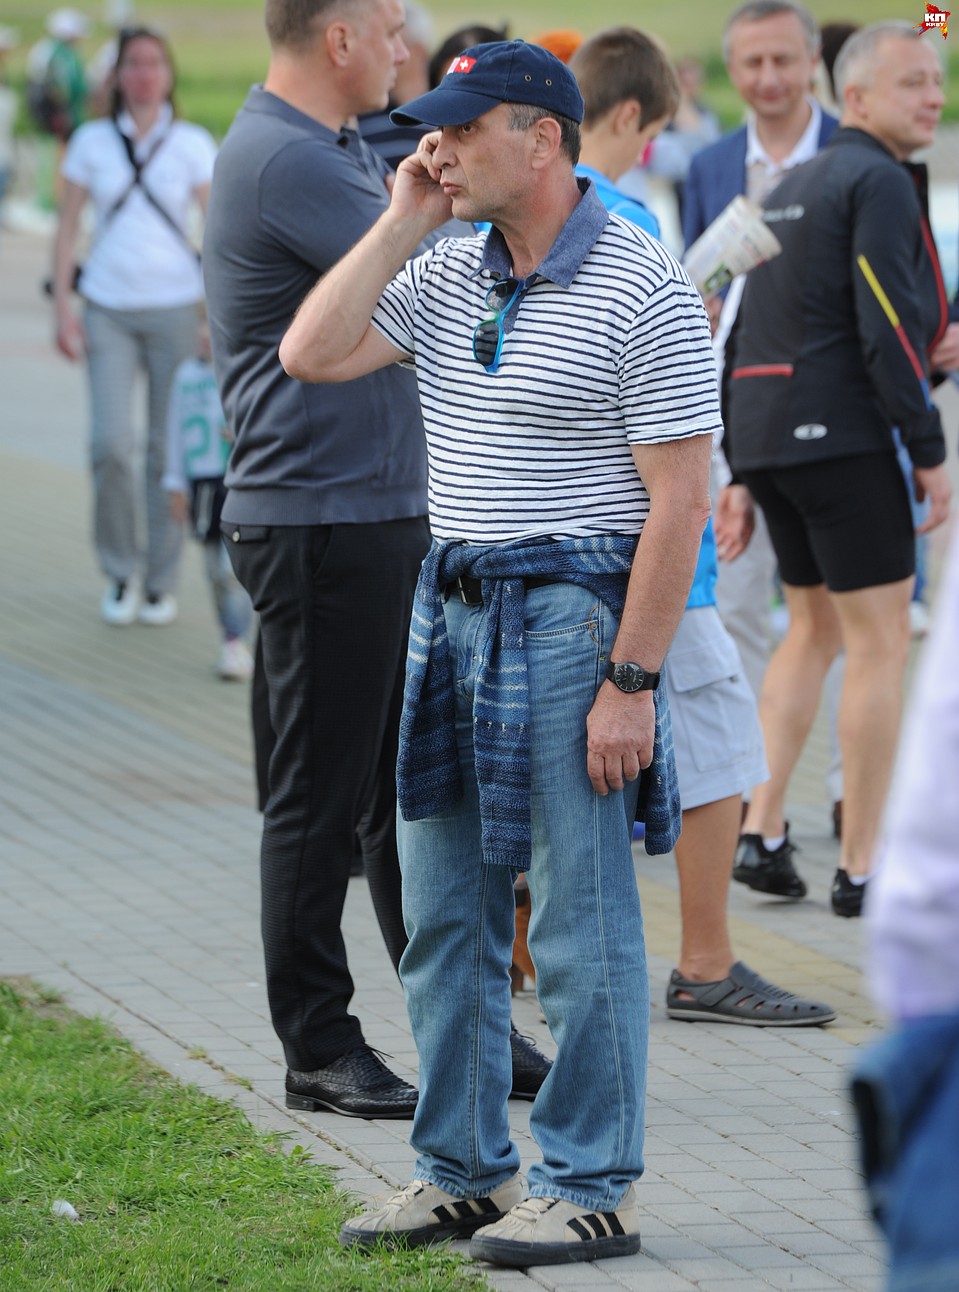 Аркадий Добкин занимает 14-ую строчку в рейтинге белорусских богачей. Но в толпе его узнает не каждый. Фото: Виктор ГИЛИЦКИЙ